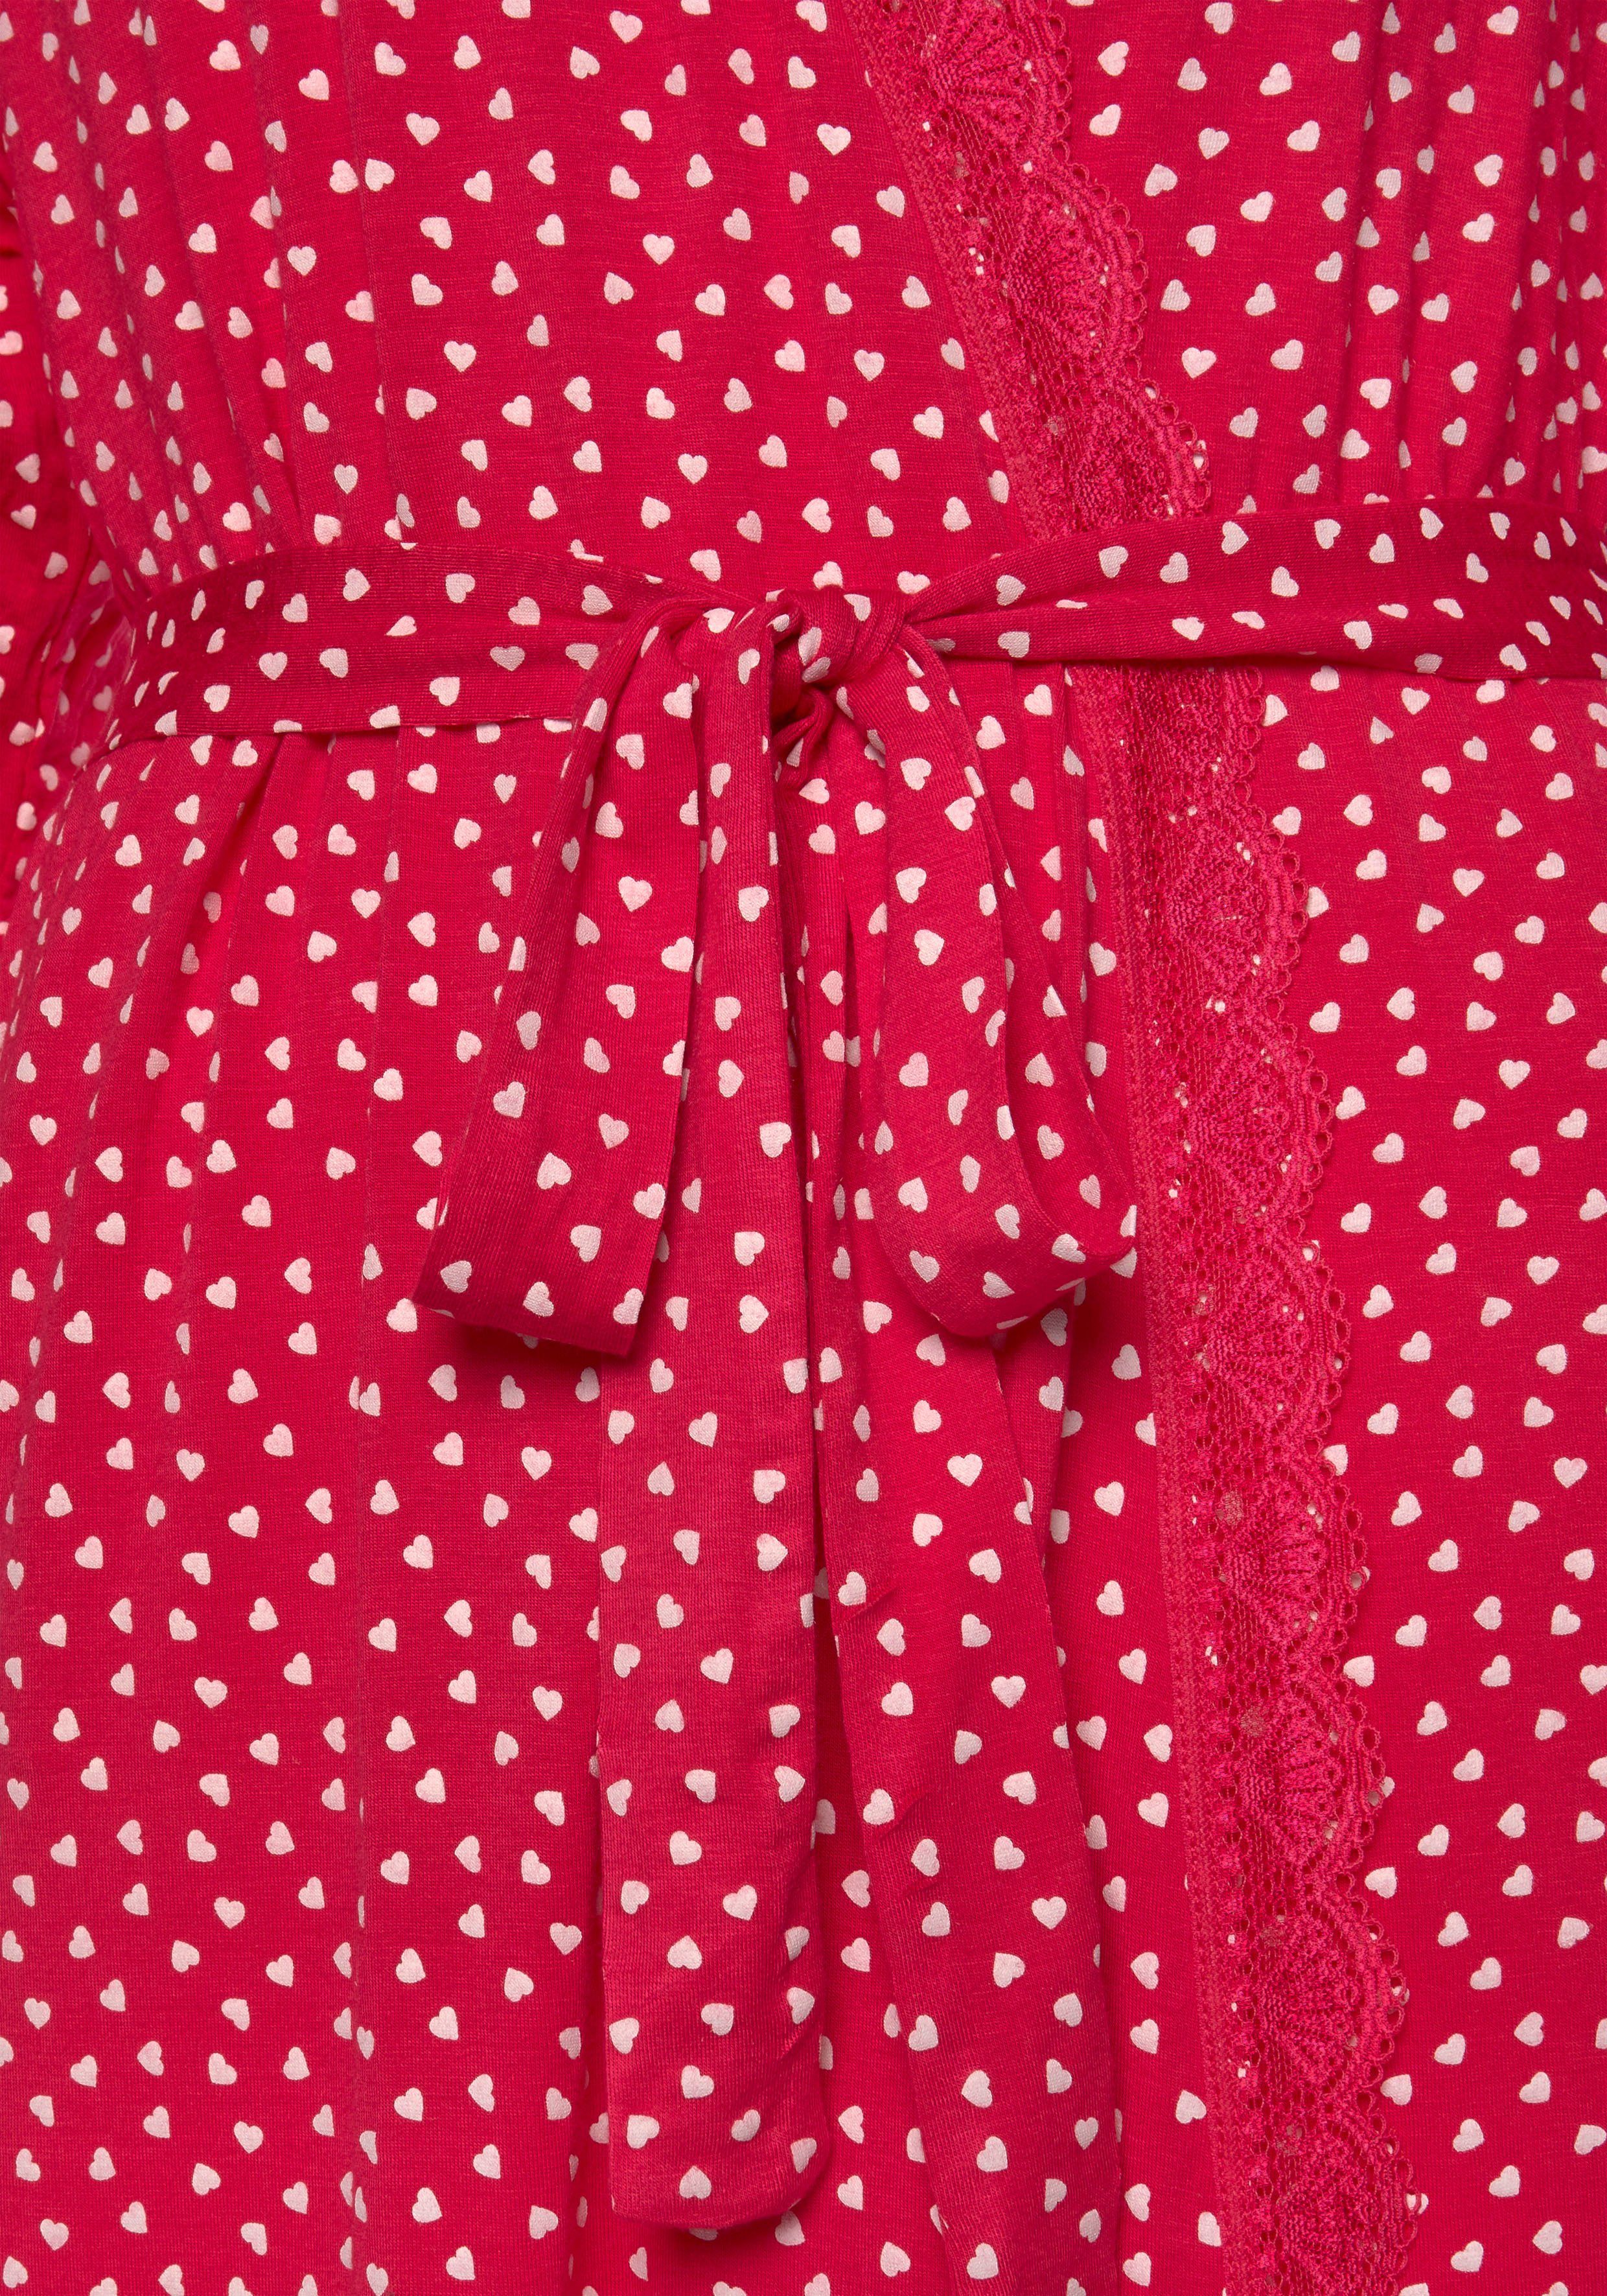 Spitze pink-gemustert und Gürtel, s.Oliver Kurzform, mit Kimono, Herzchendruck Single-Jersey,